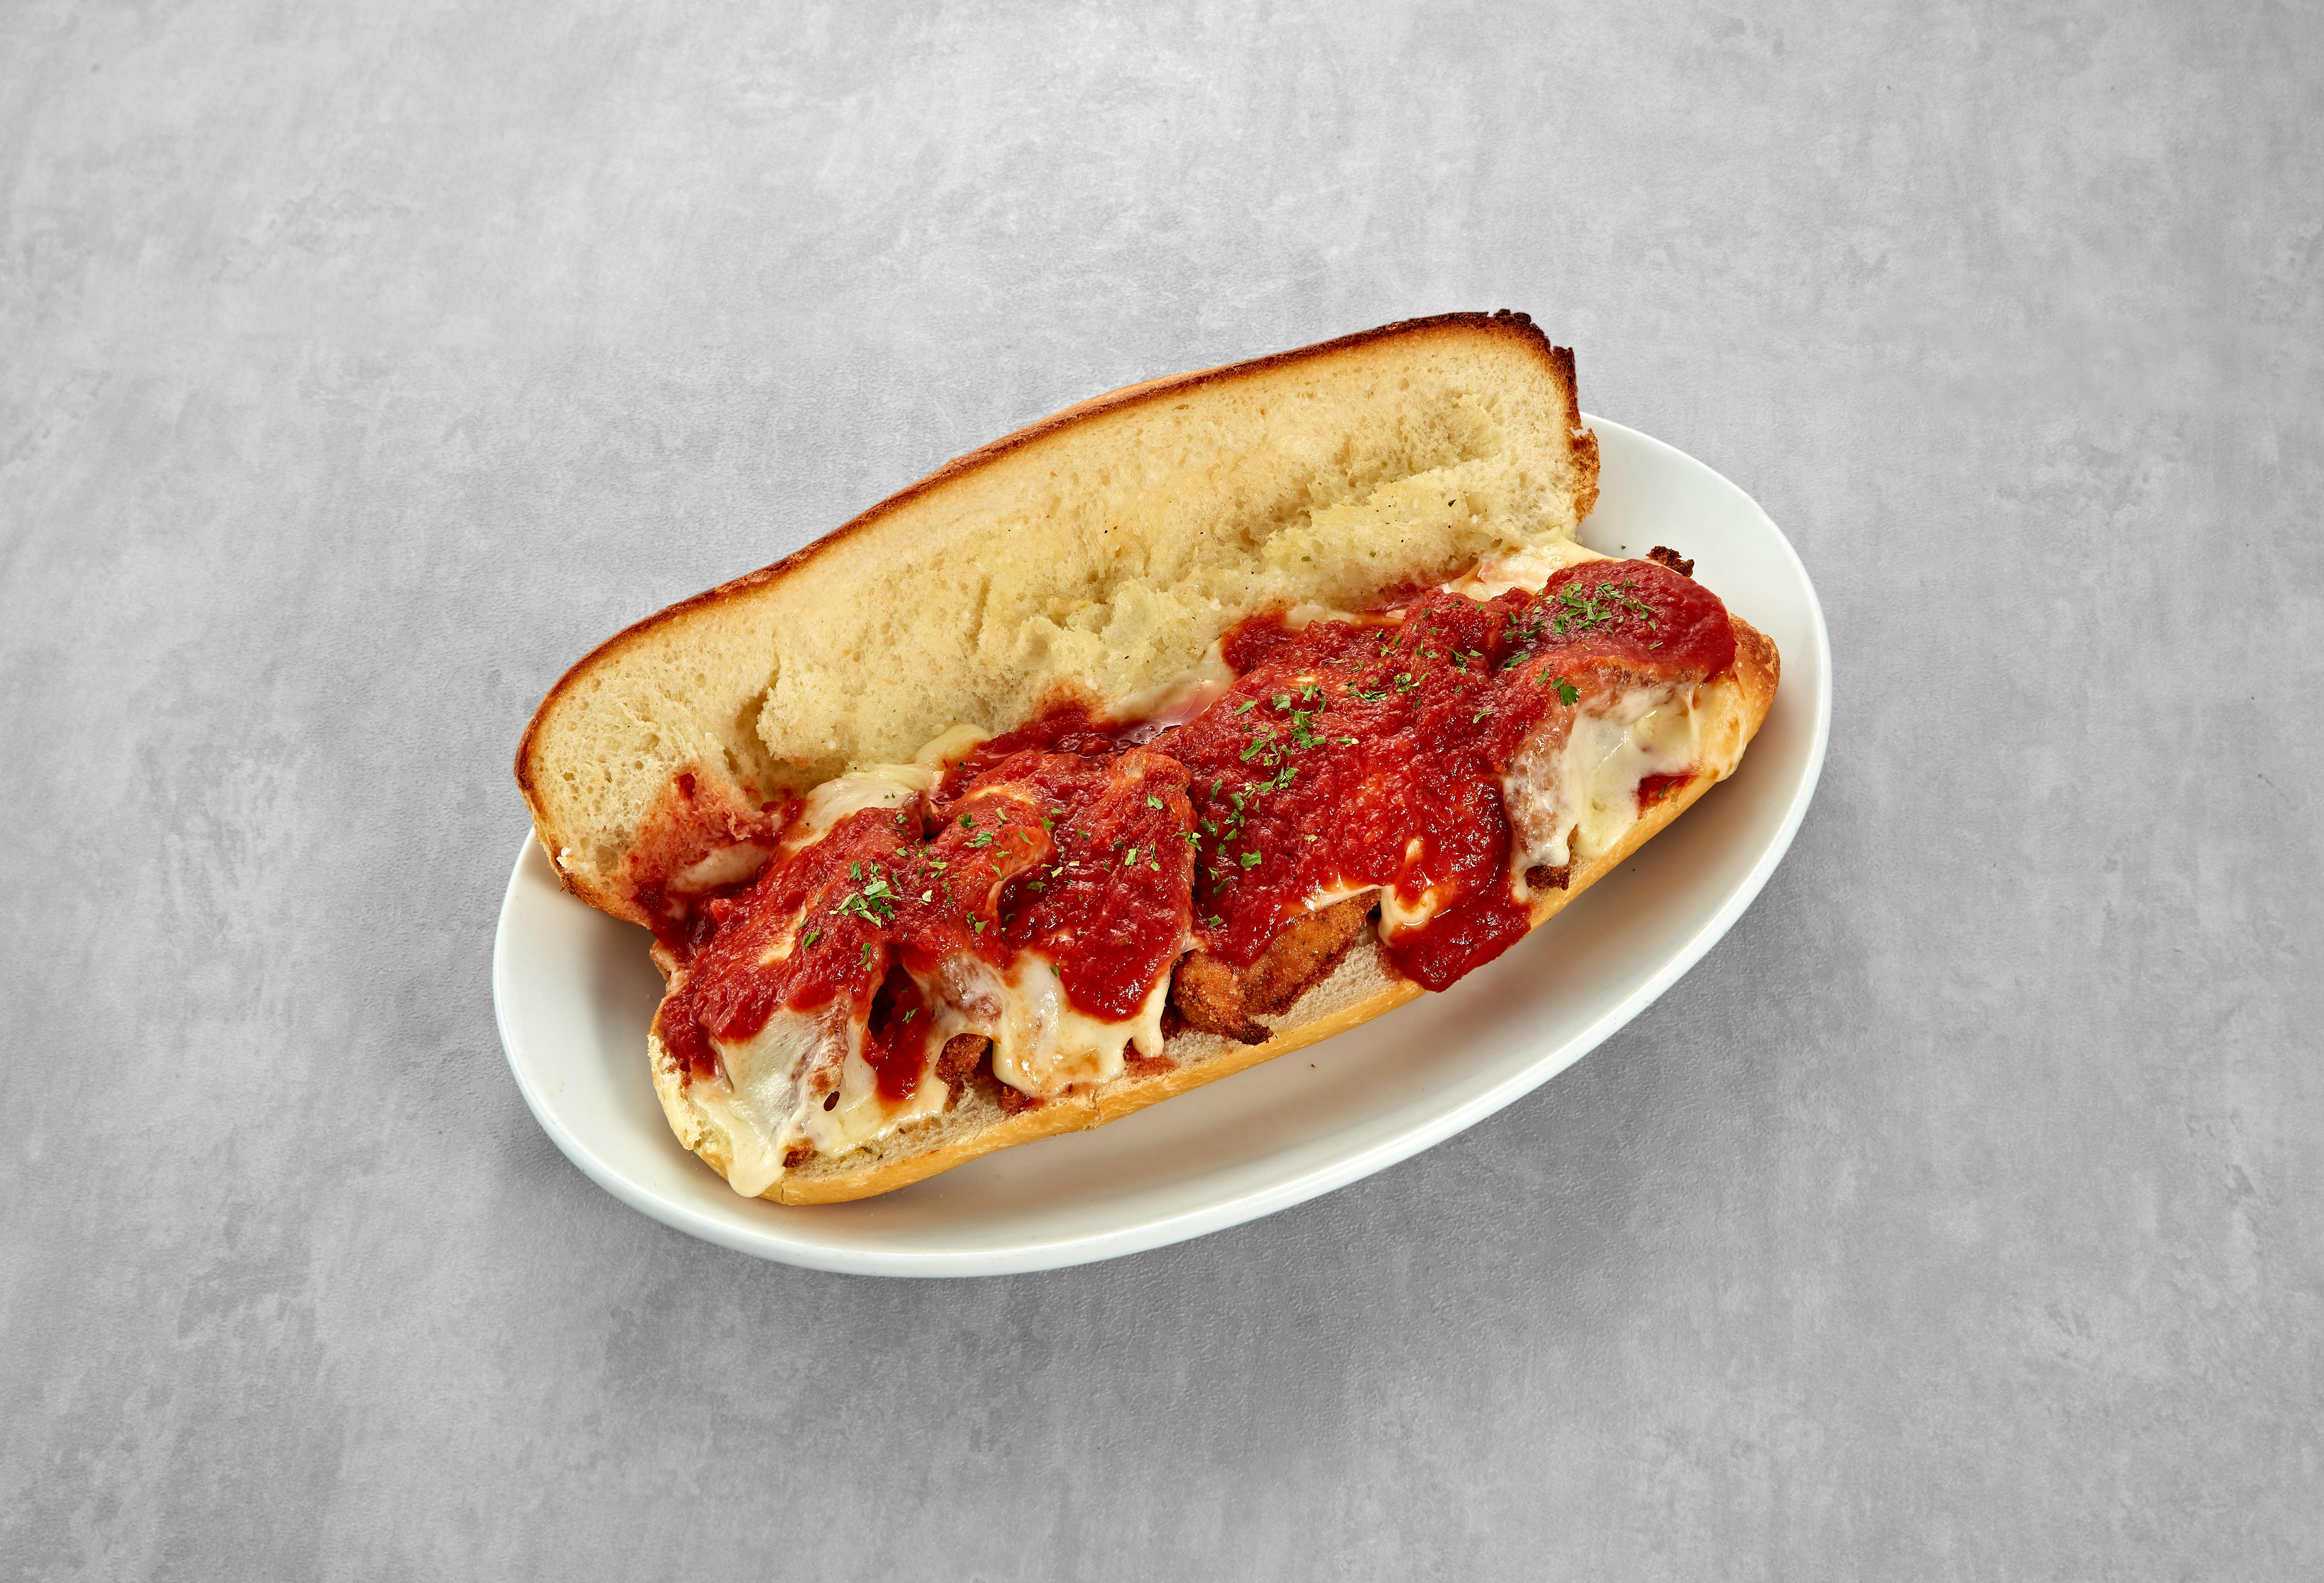 Shrimp Parmigiana Sandwich from Mario's Pizzeria in Seaford, NY